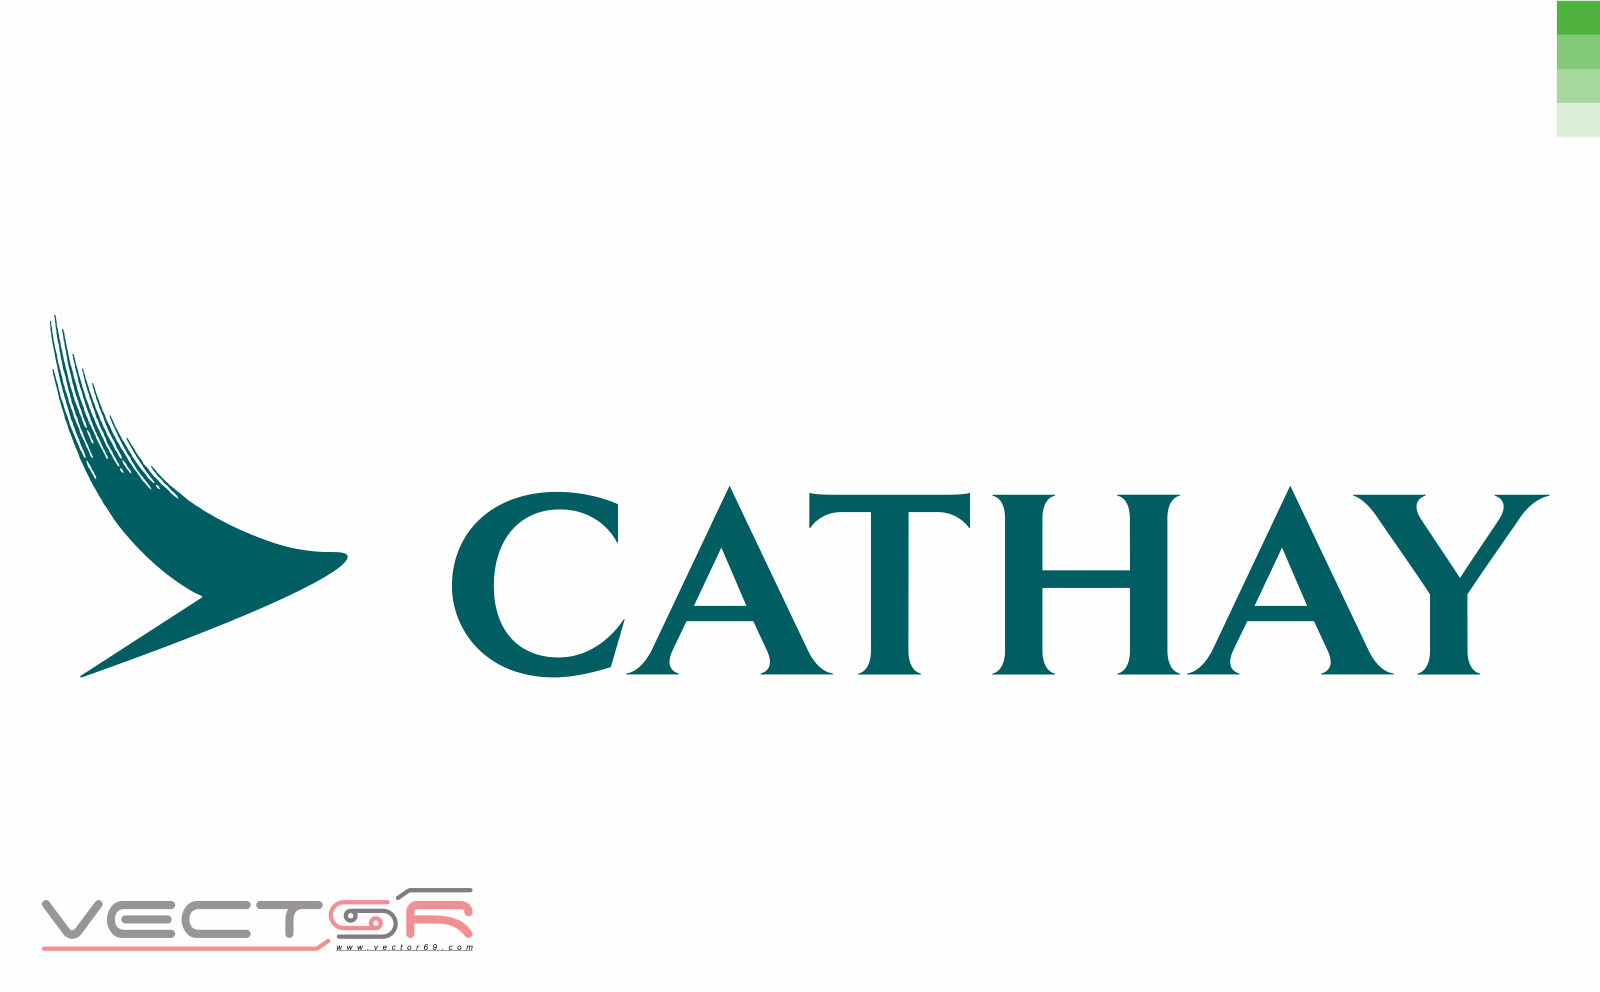 Cathay Logo - Download Vector File CDR (CorelDraw)